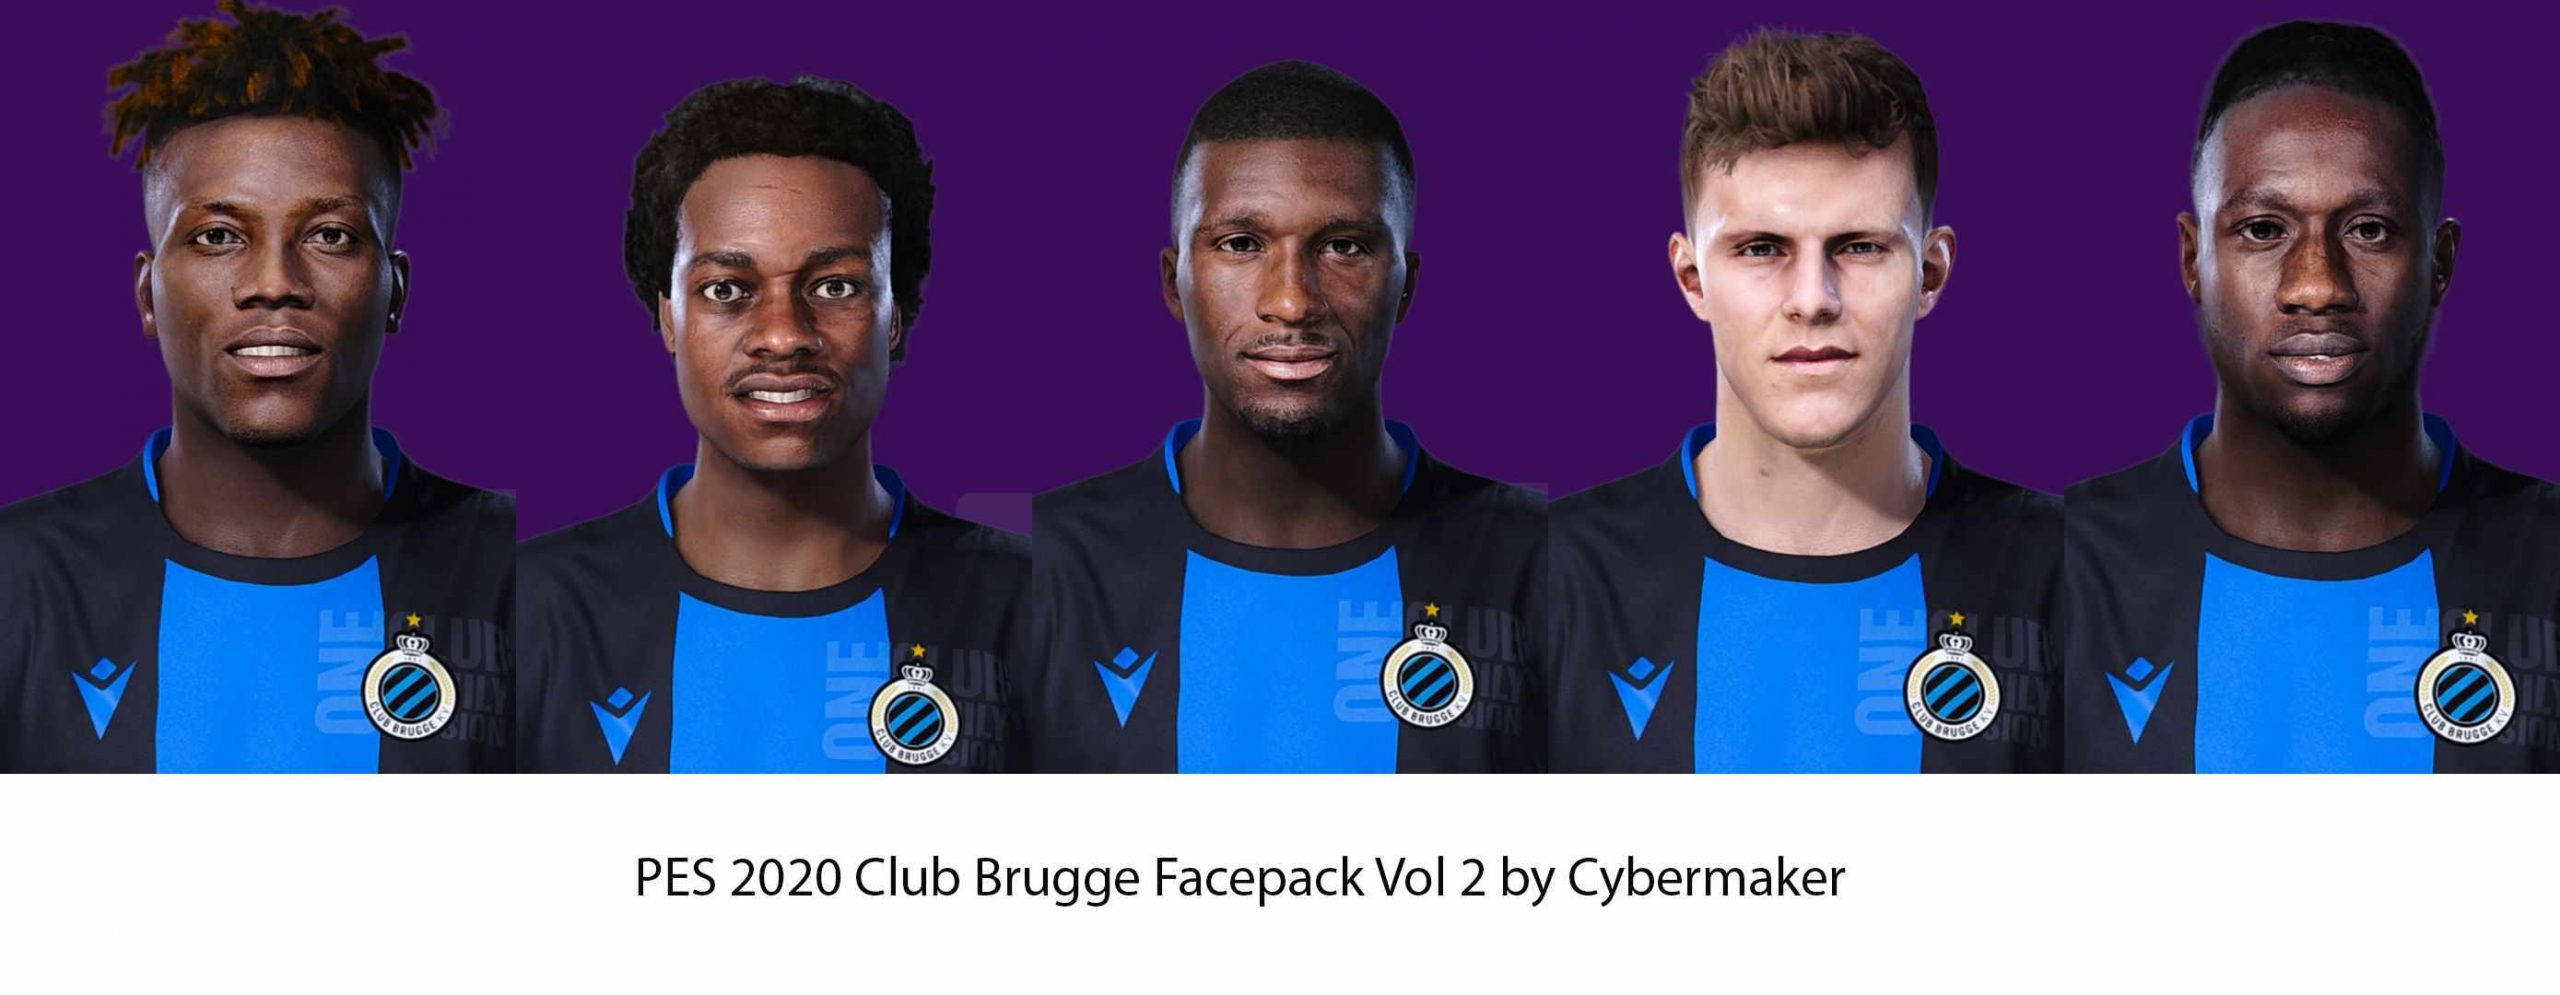 PES 2020 Club Brugge Facepack Vol 2 by Cybermaker